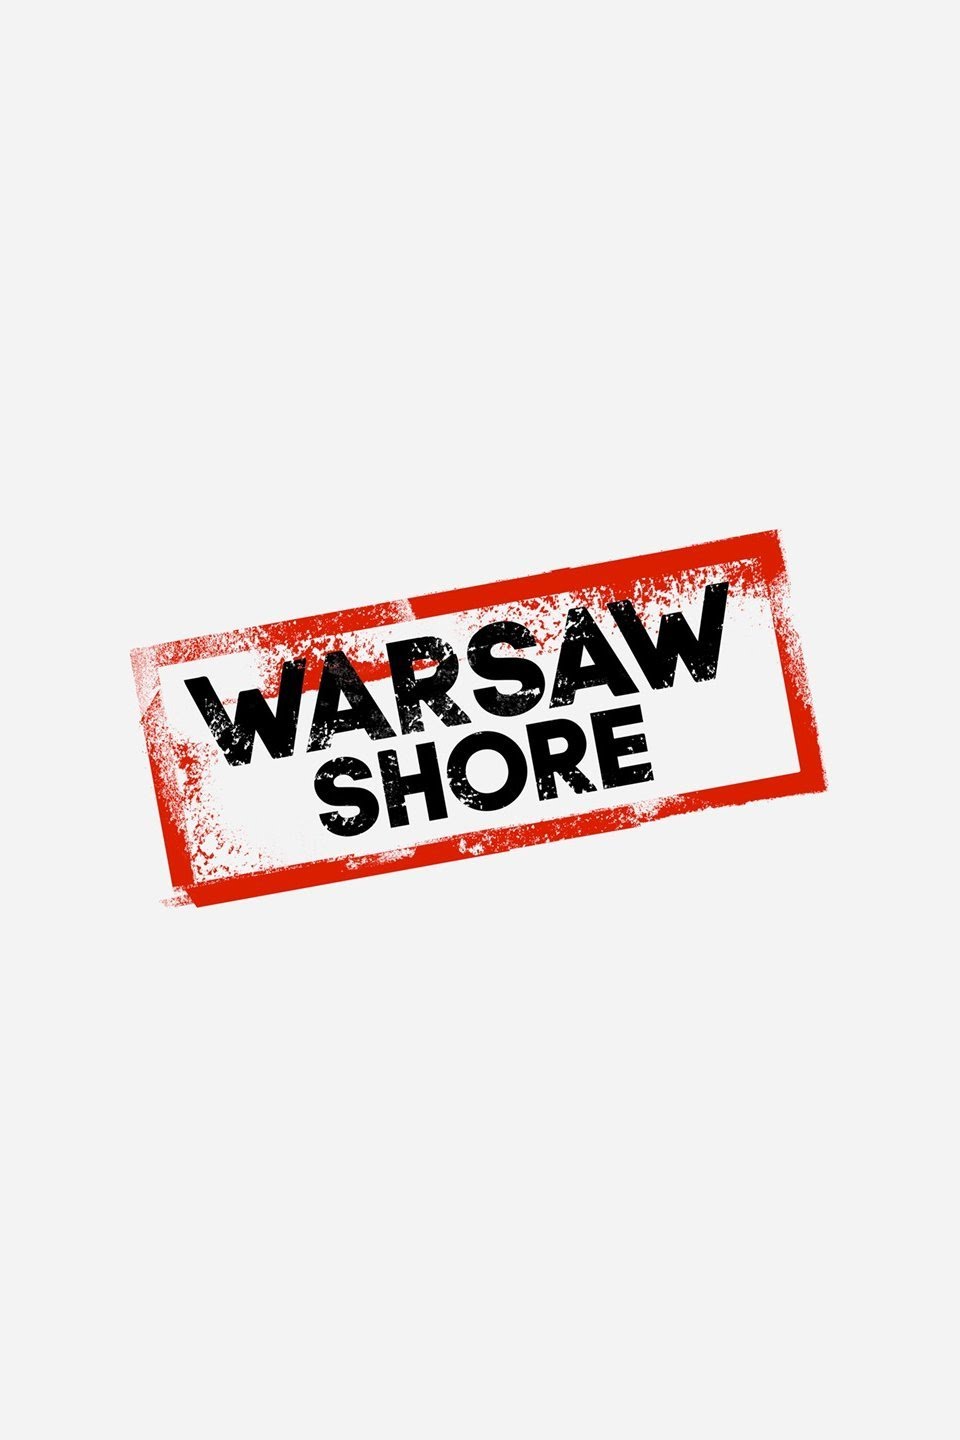 Warsaw Shore: Ekipa z Warszawy